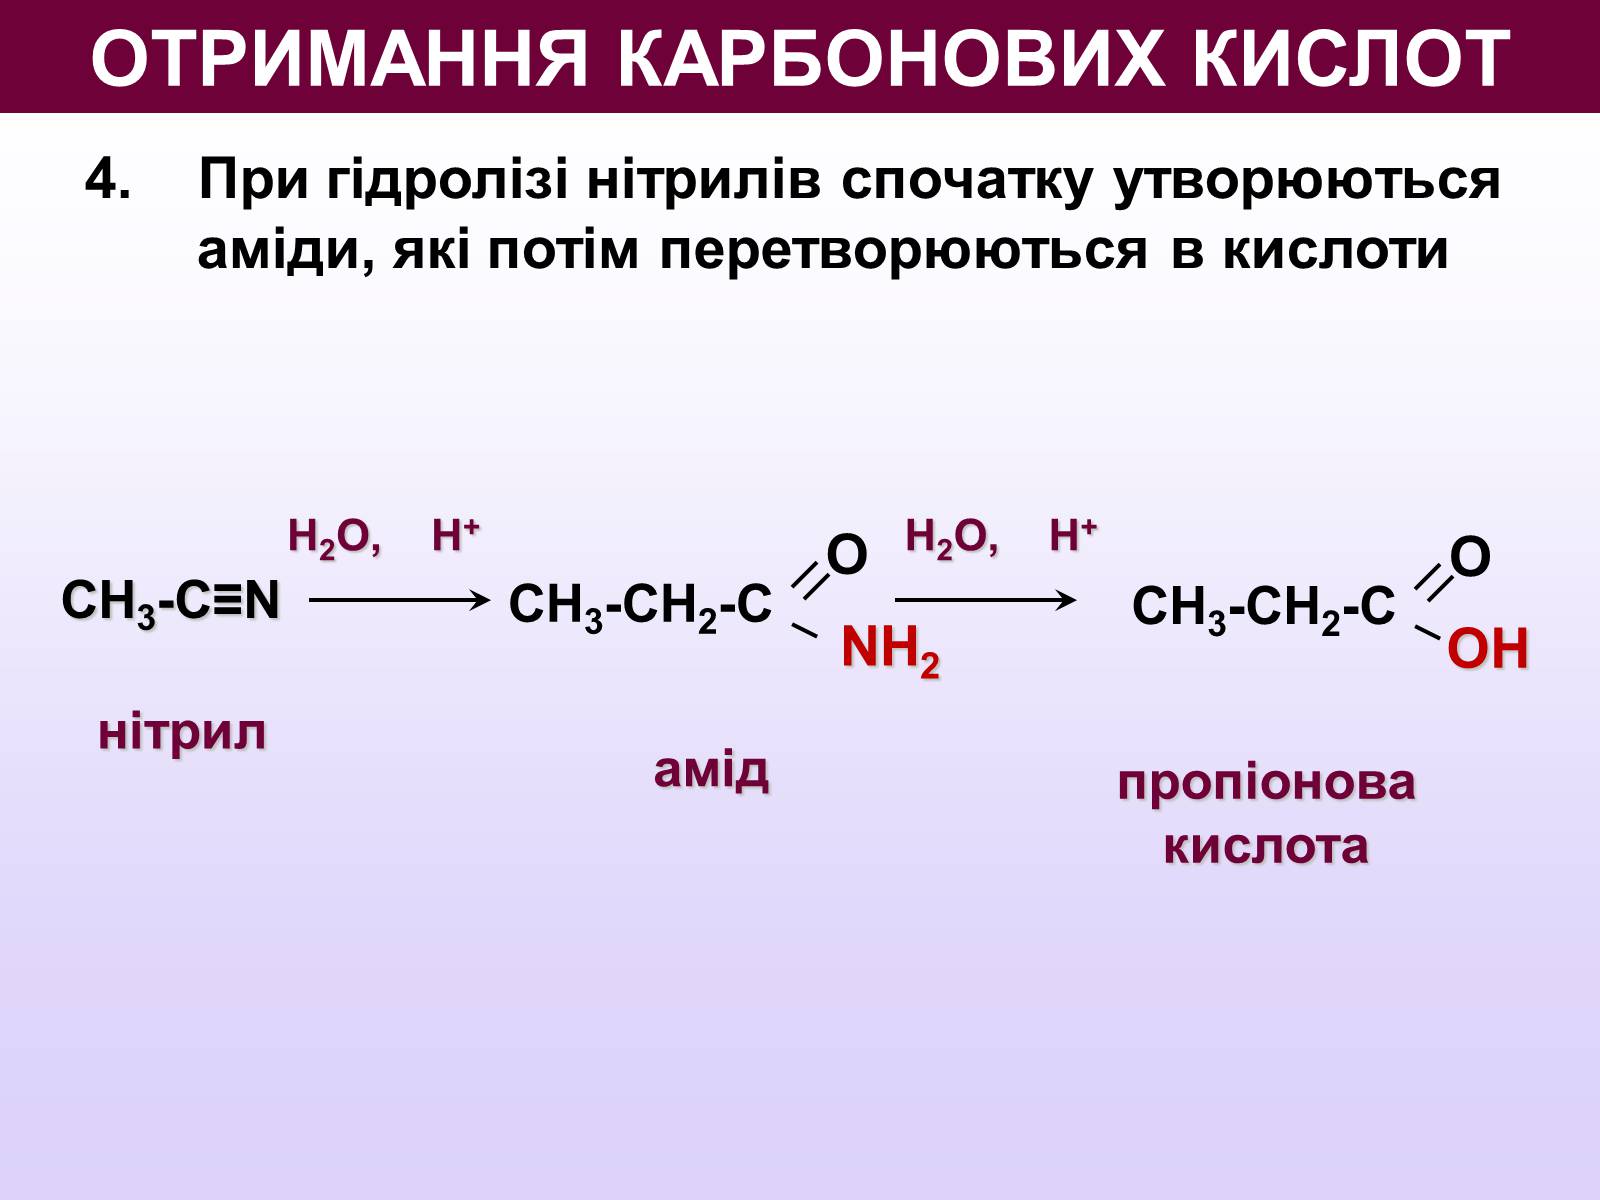 Реакция гидролиза изопропилацетата. Карбонові кислоти. Пропилацетат и вода. Презентація карбонові кислоти. Изопропилацетат.